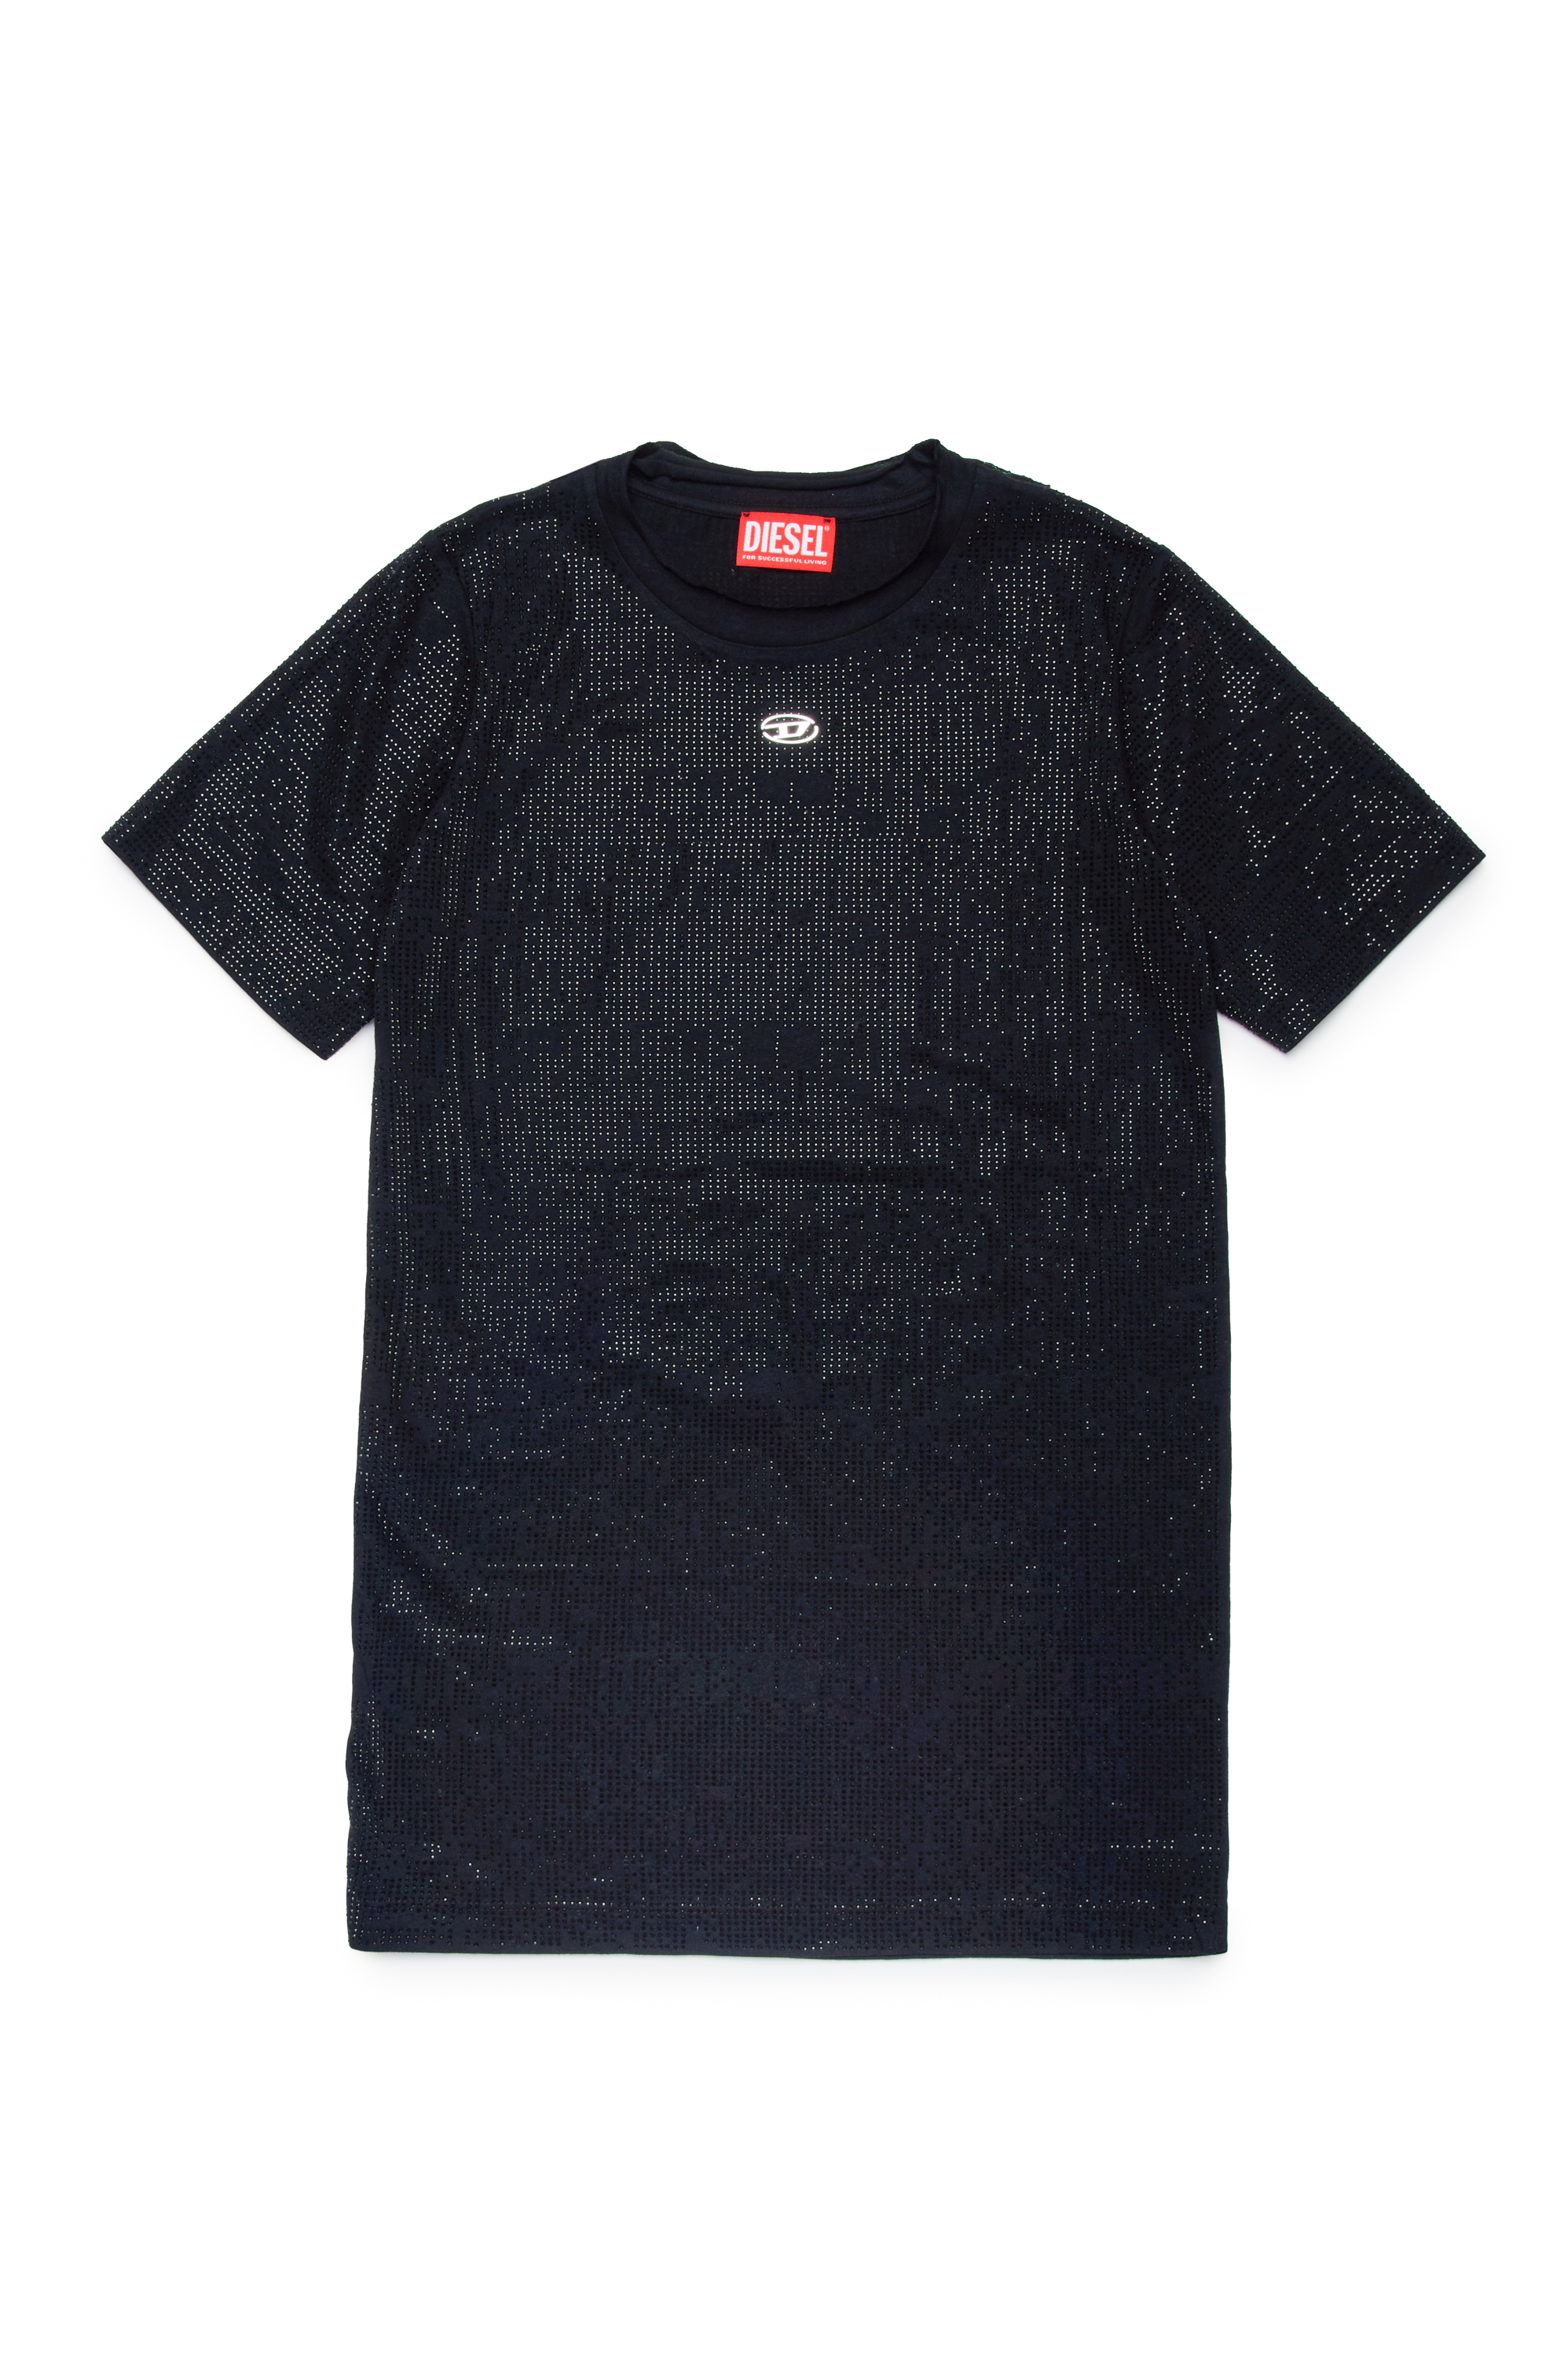 Diesel - DARYX, Mujer Vestido camiseta con micropiedras in Negro - Image 1